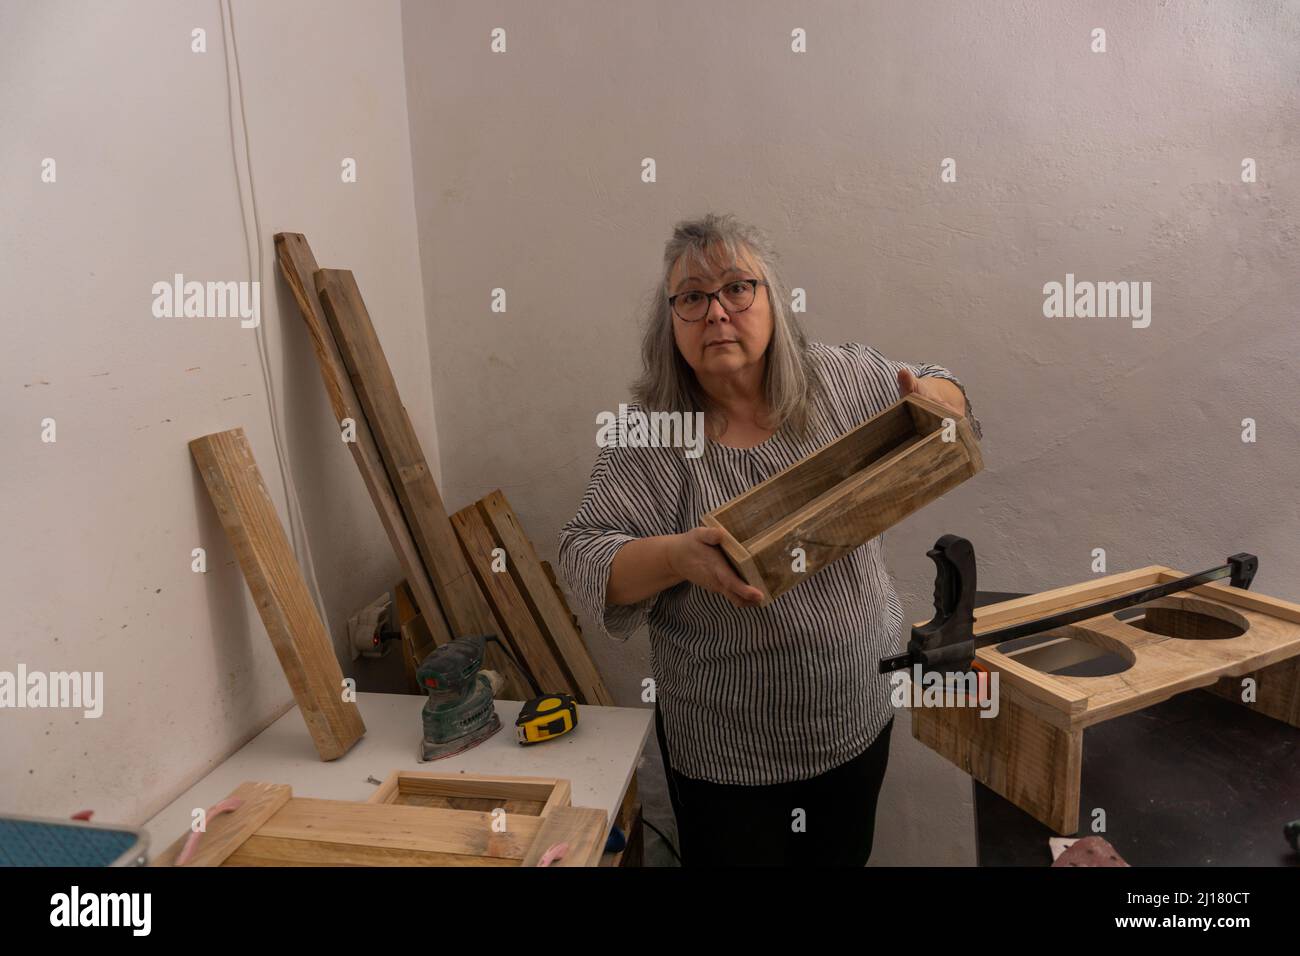 Weißhaarige Frau, die in ihrer Werkstatt aus recyceltem Holz mit verschiedenen Werkzeugen und ökologischen Materialien arbeitet und ihre Arbeit zeigt Stockfoto